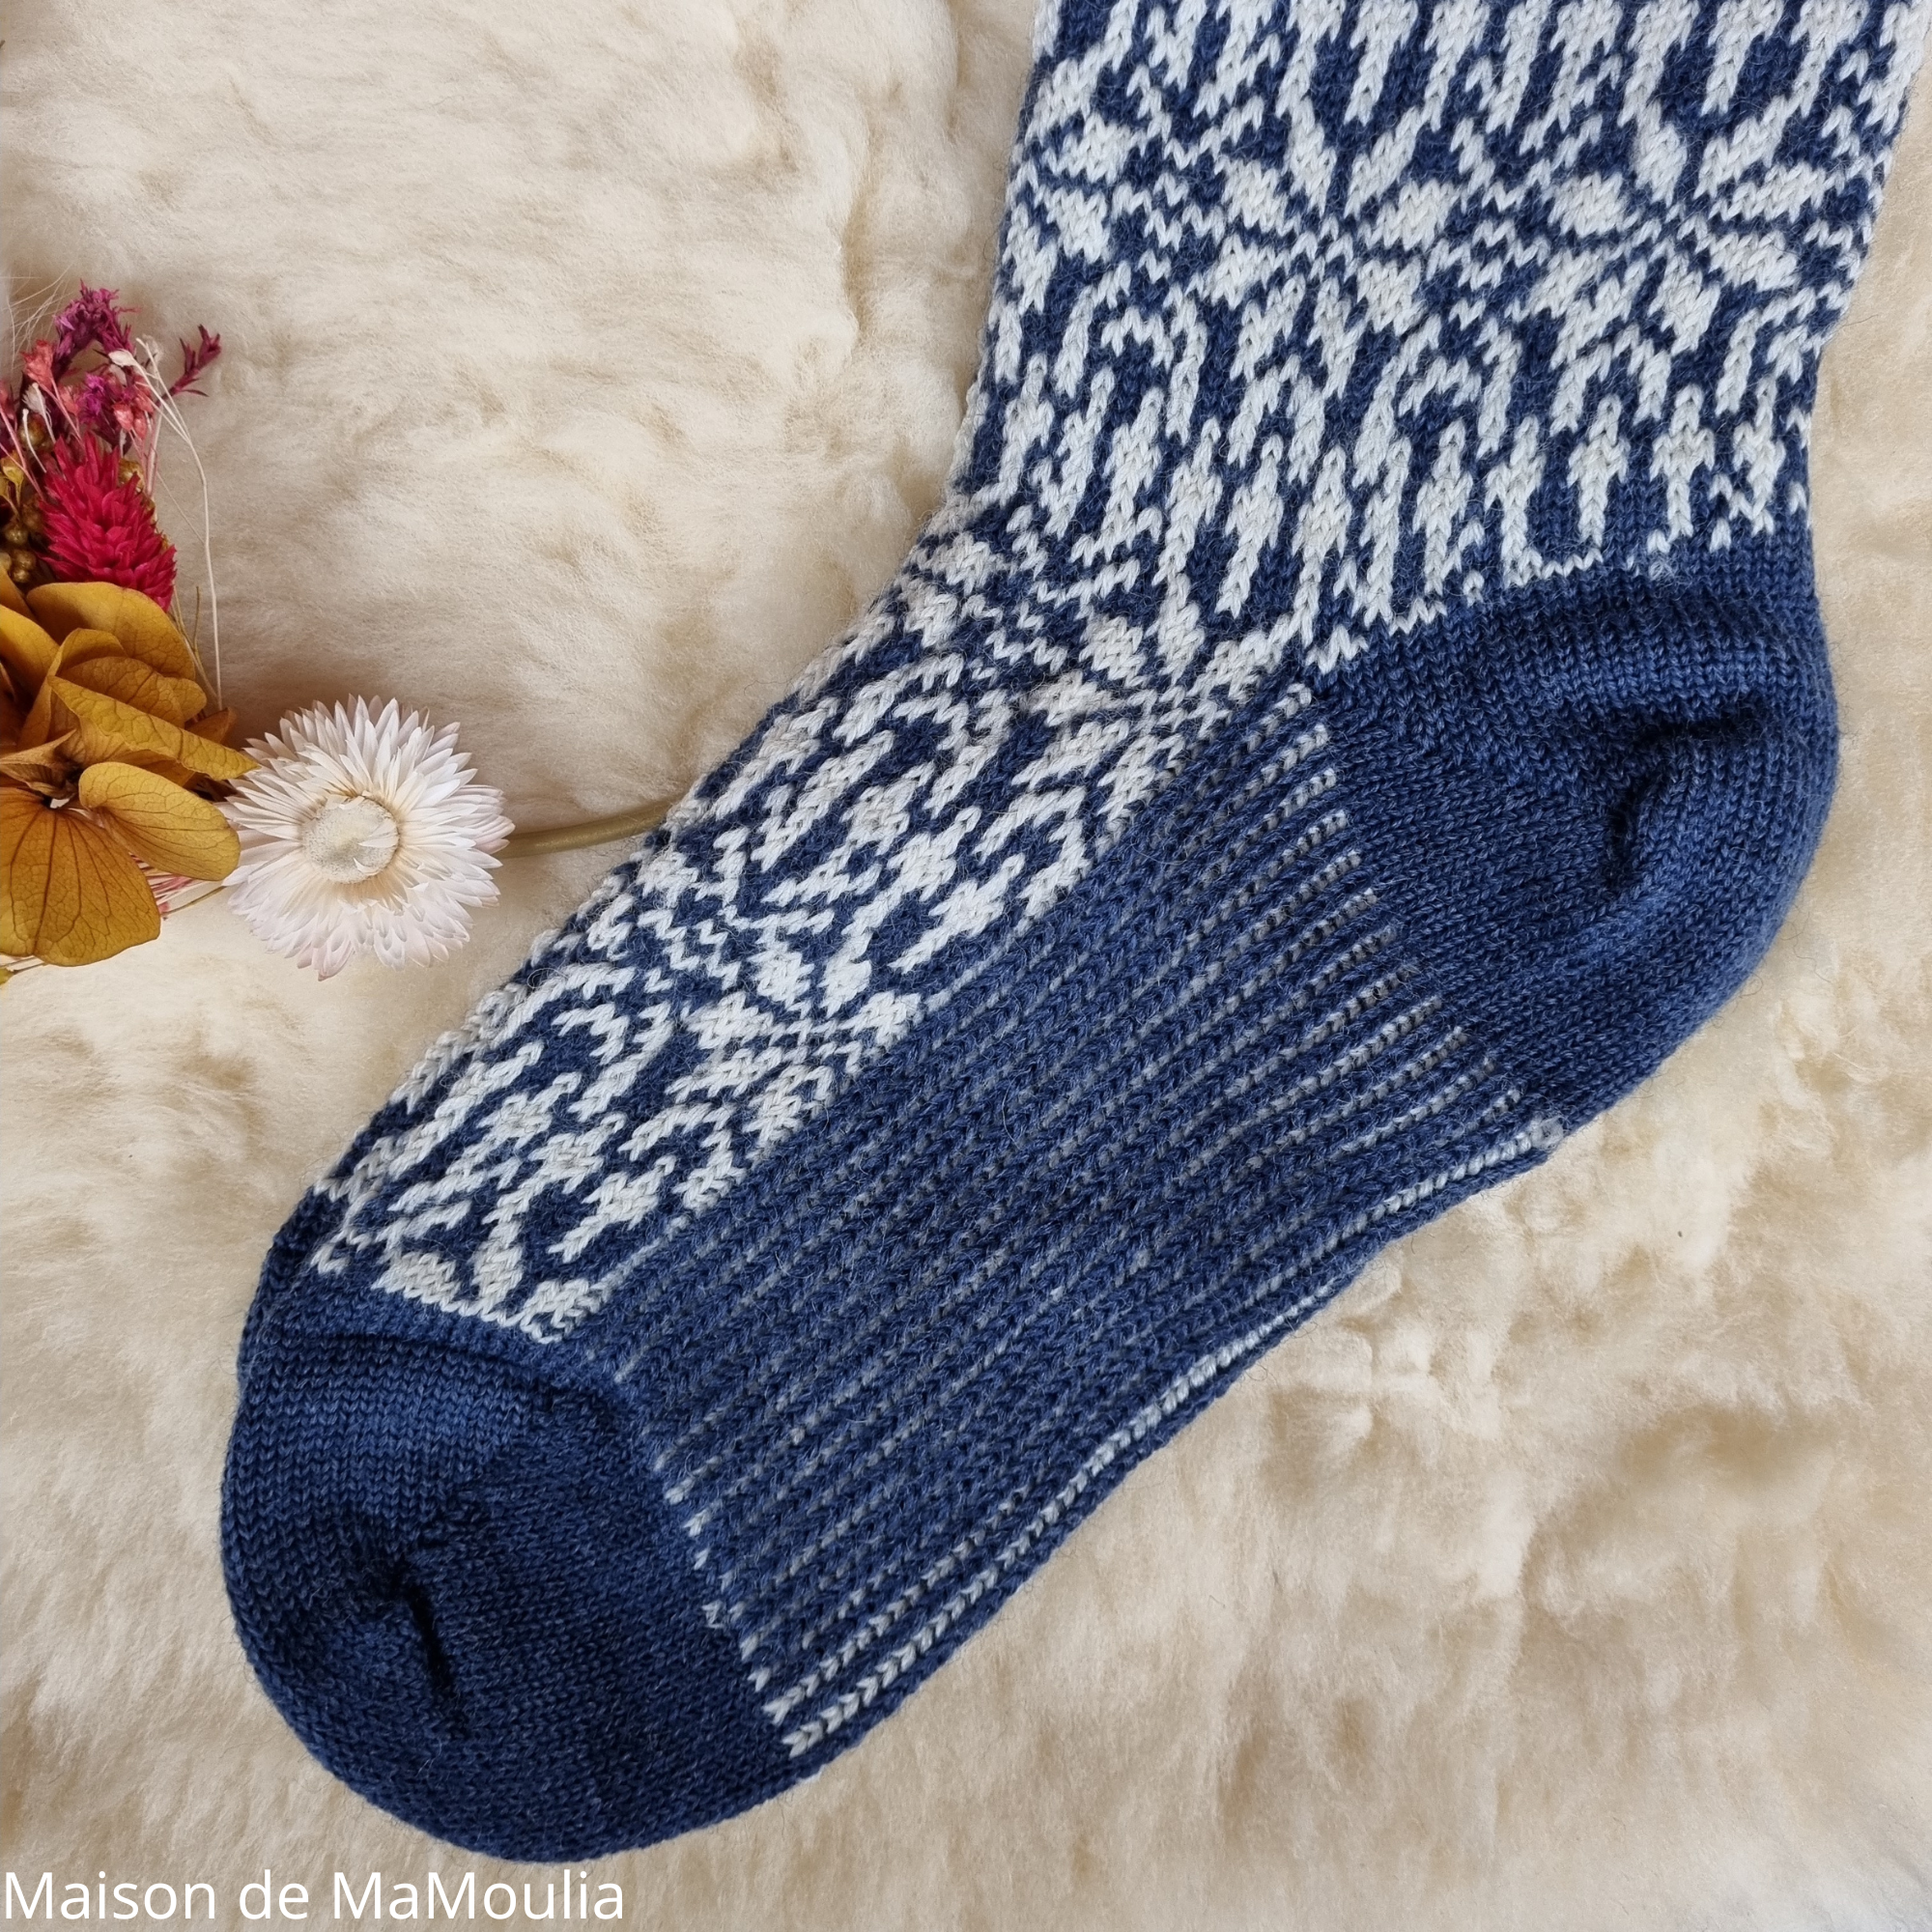 030-chaussettes-pure-laine-bio-ecologique-hirsch-natur-maison-de-mamoulia-norvegienne-adulte-ecru-bleu-marine--